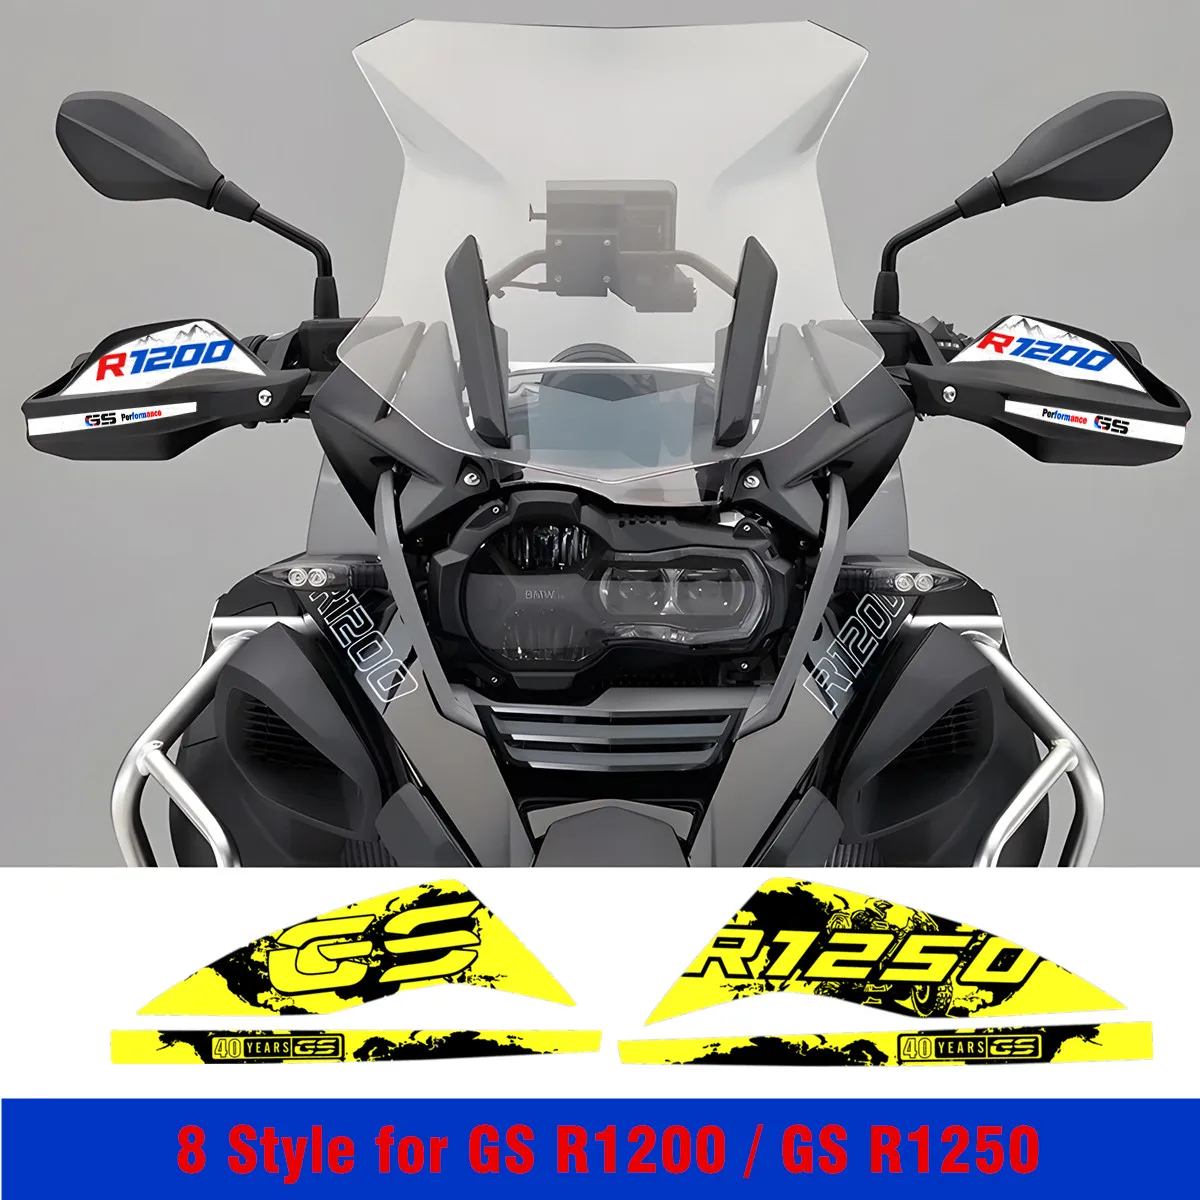 

R1250GS наклейка на мотоцикл, защита рук на 40-ю годовщину, приключения R1200GS, водонепроницаемая наклейка